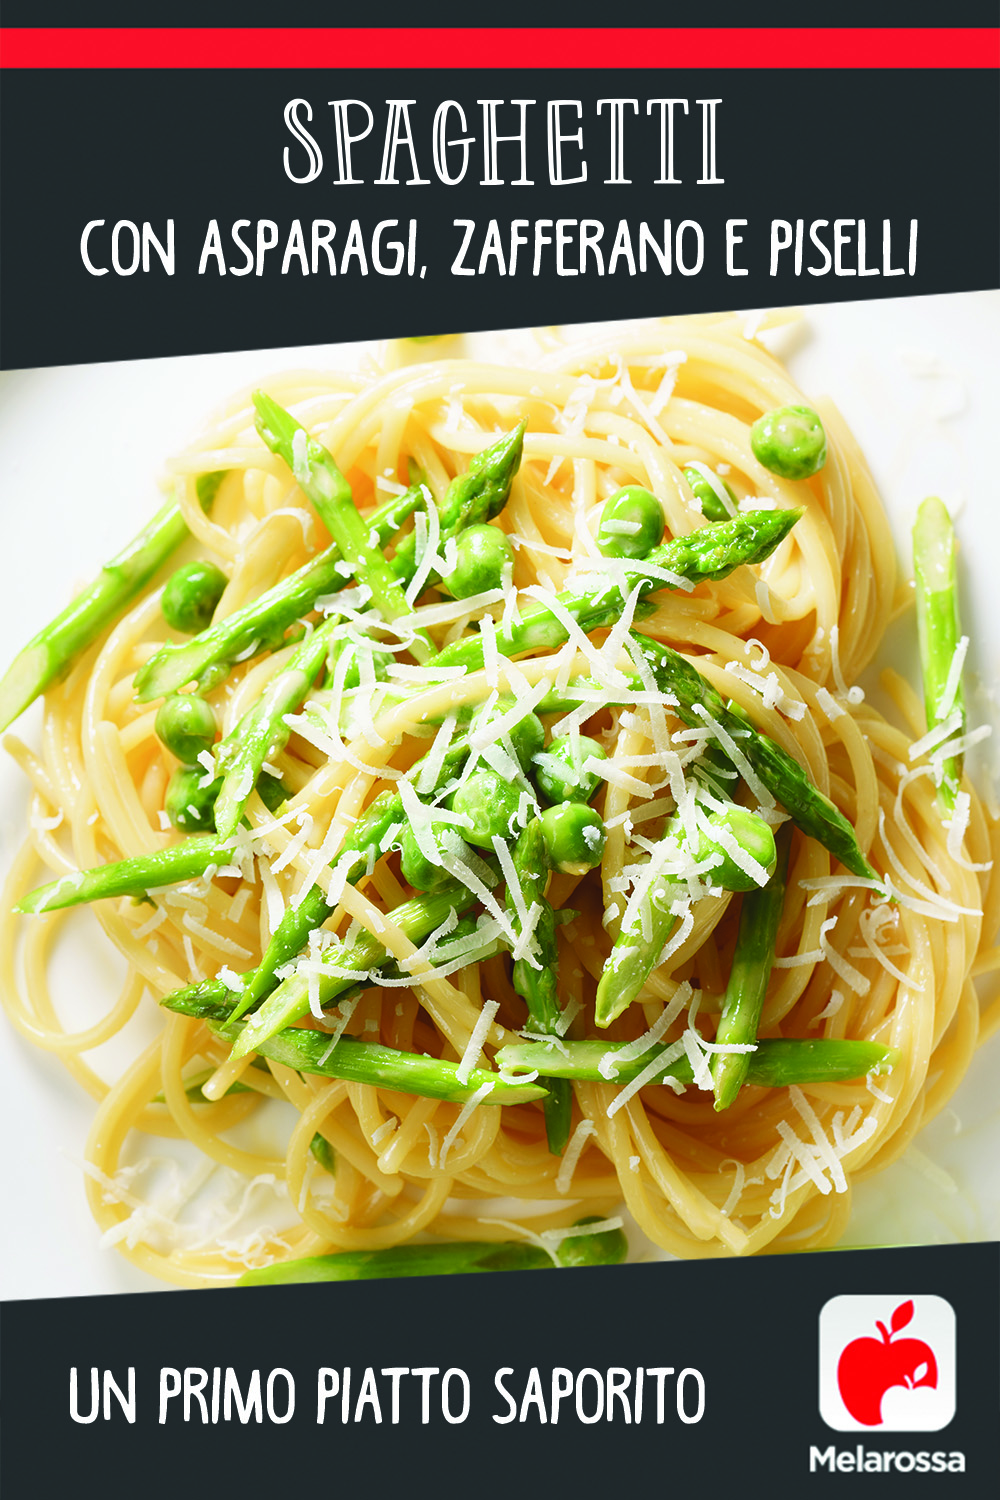 Spaghetti con asparagi, zafferano e piselli: un primo piatto saporito